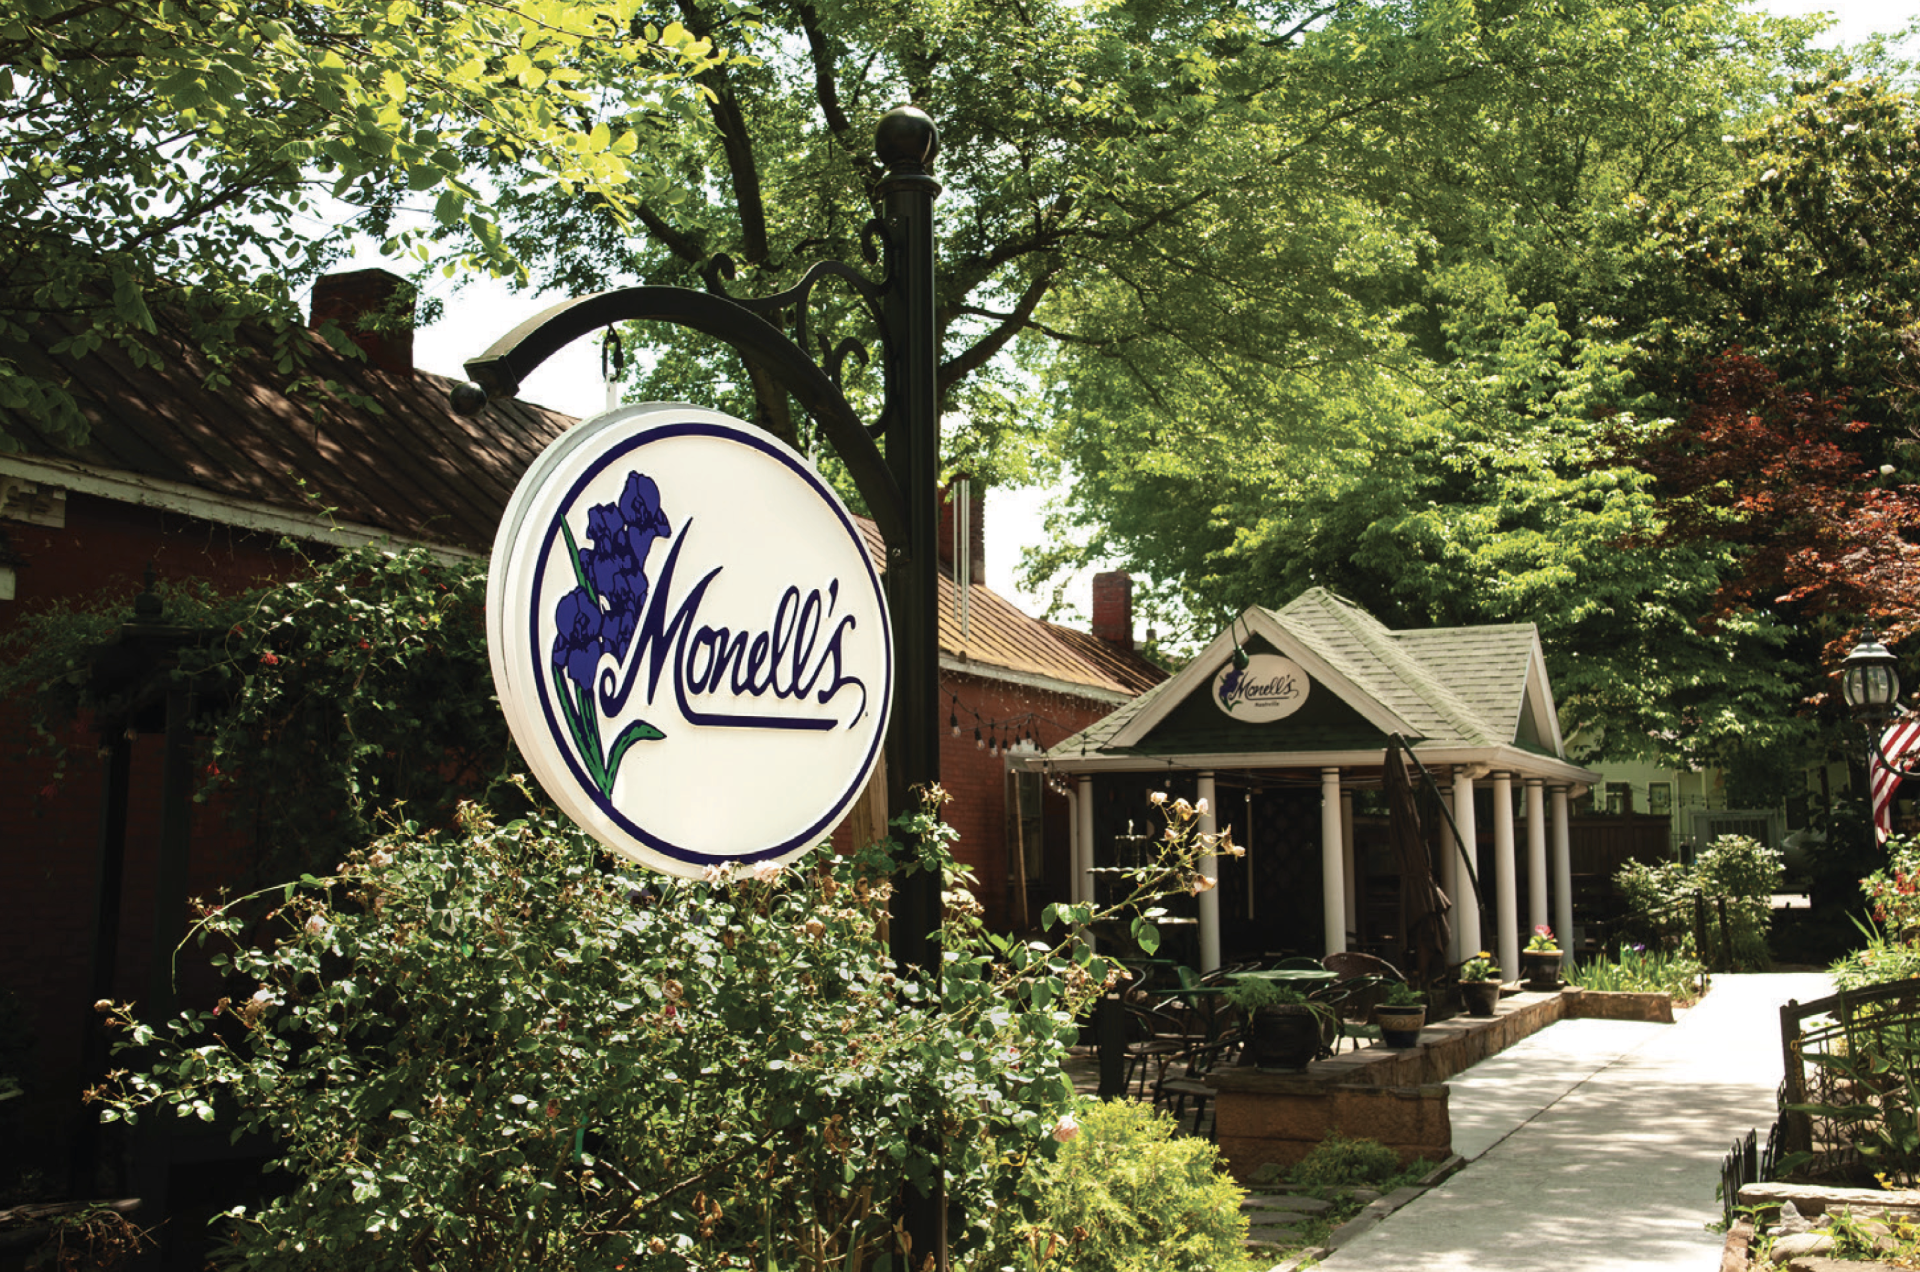 Monells restaurant in Germantown, Nashville Tennessee